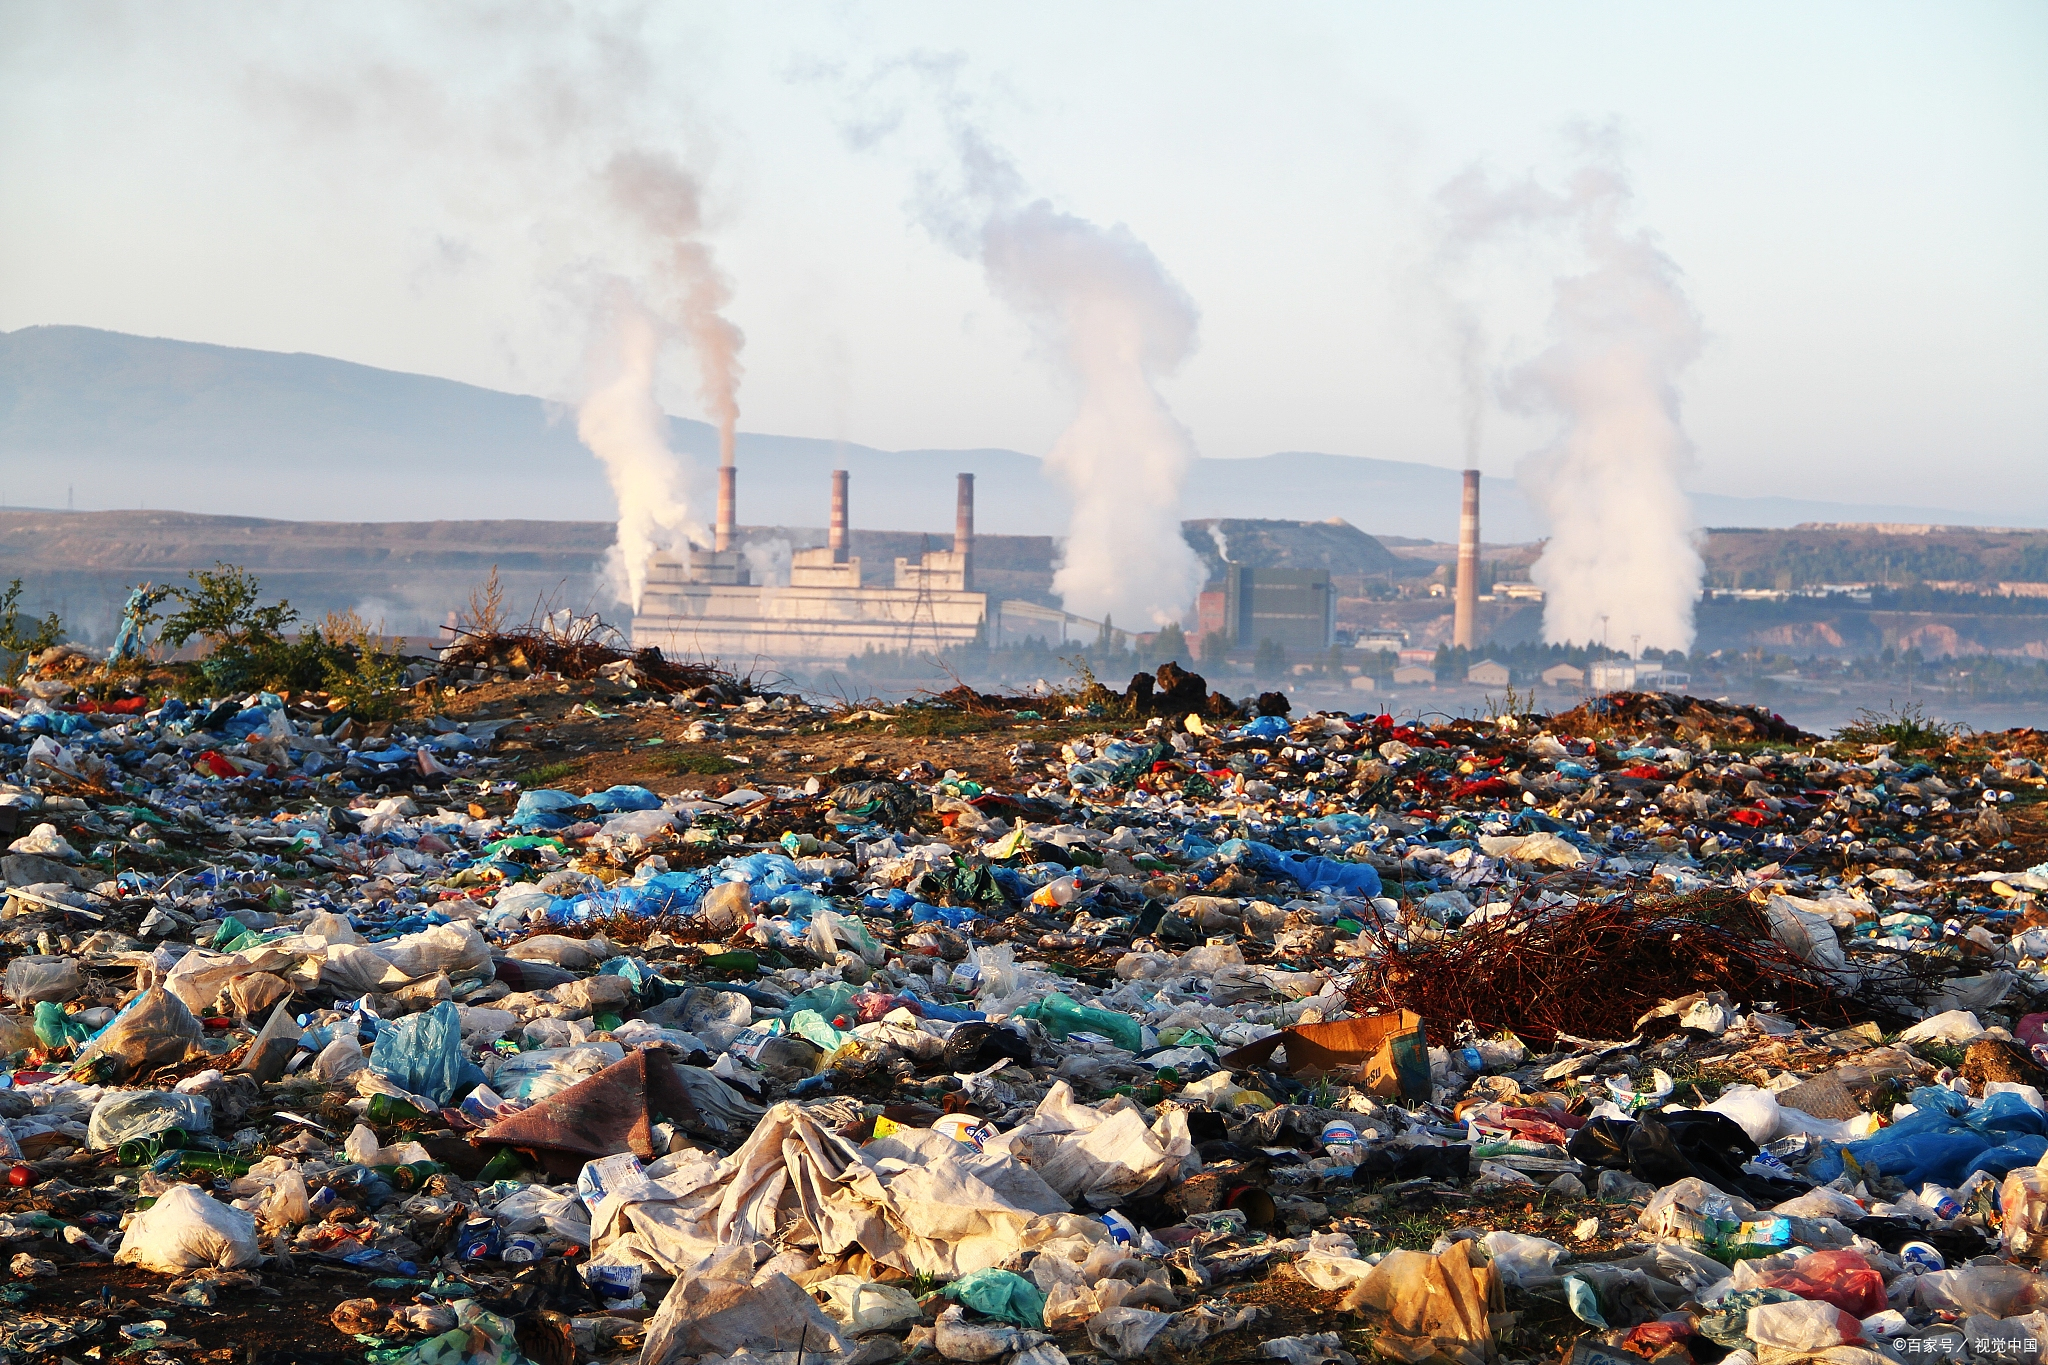 综上所述,工业污染和农业污染都是严重的问题,其对环境和人类健康的